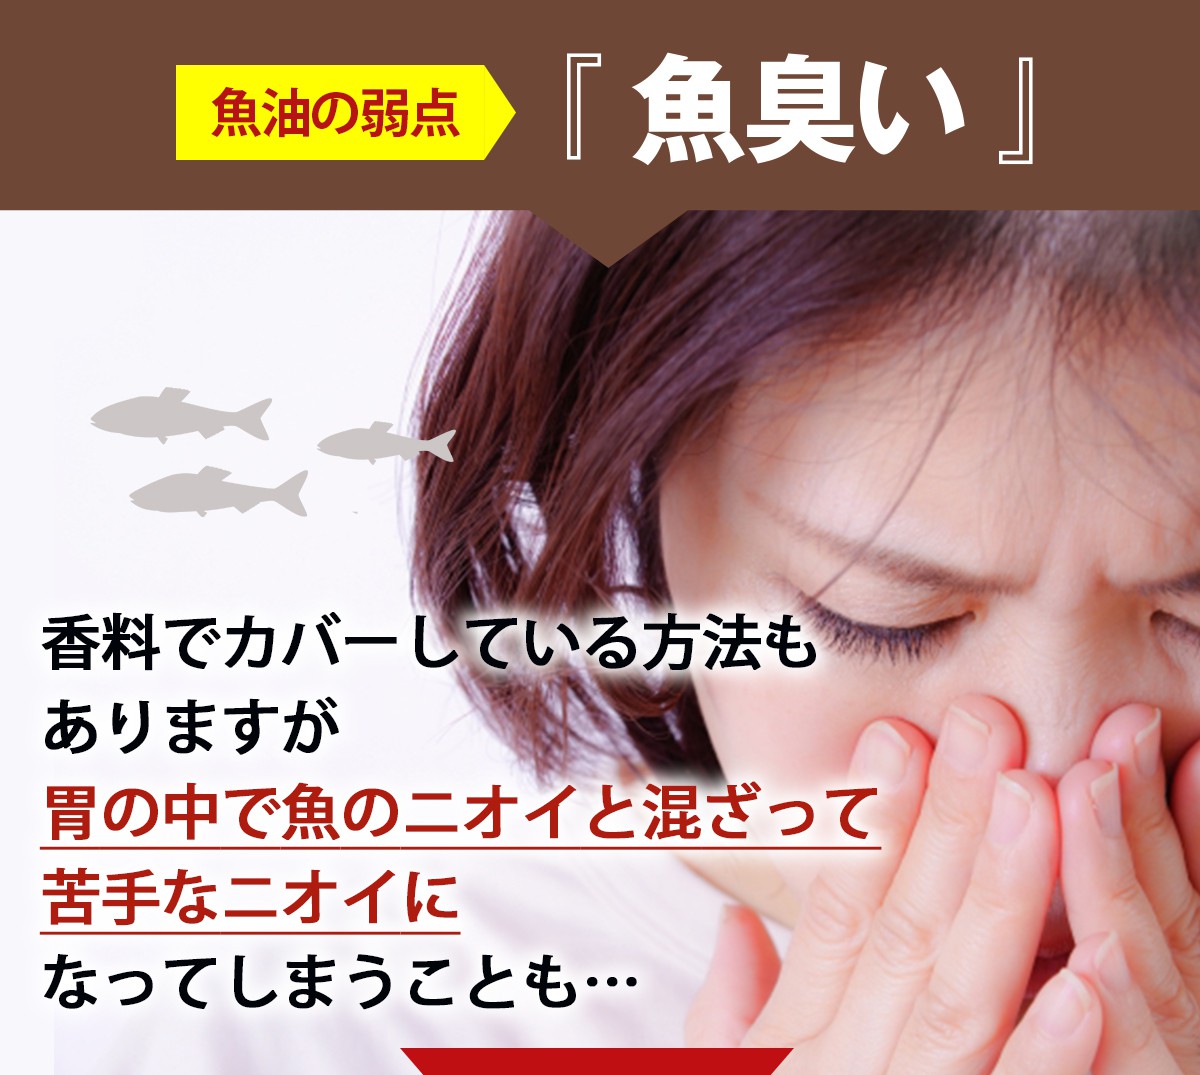 1.魚油の弱点 魚臭さ対策